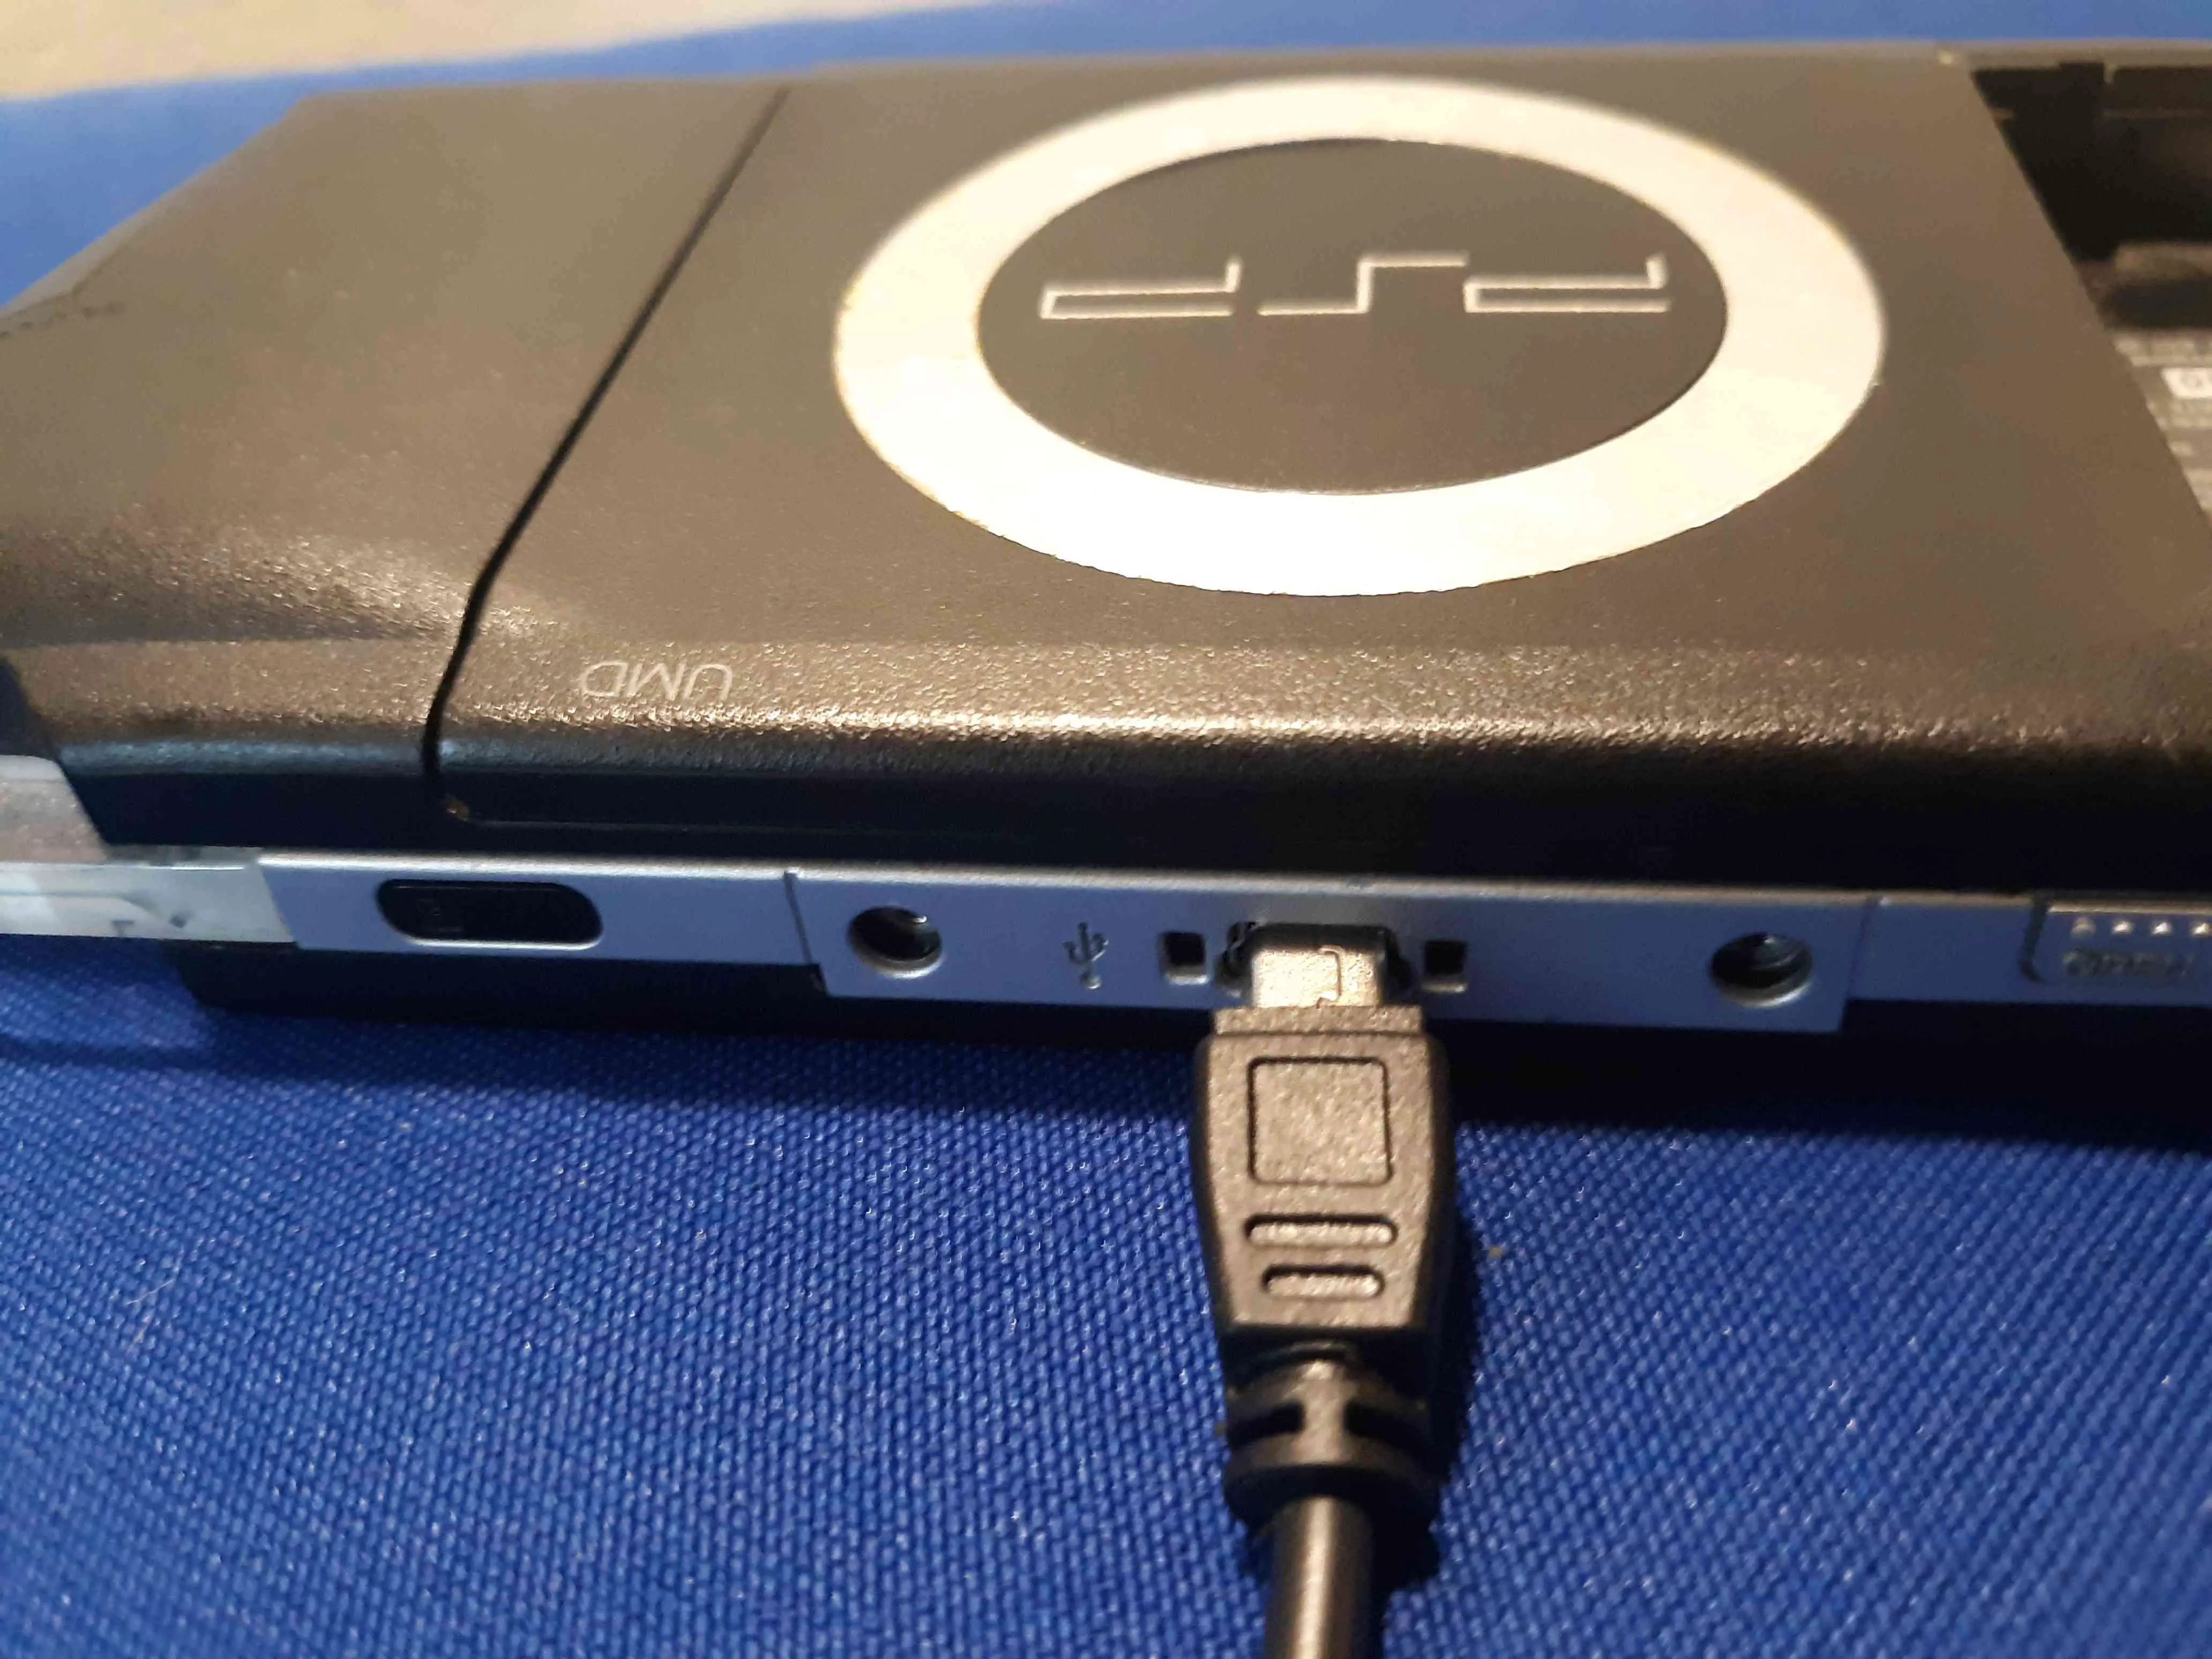 Conector USB mini-B conectado a um PSP